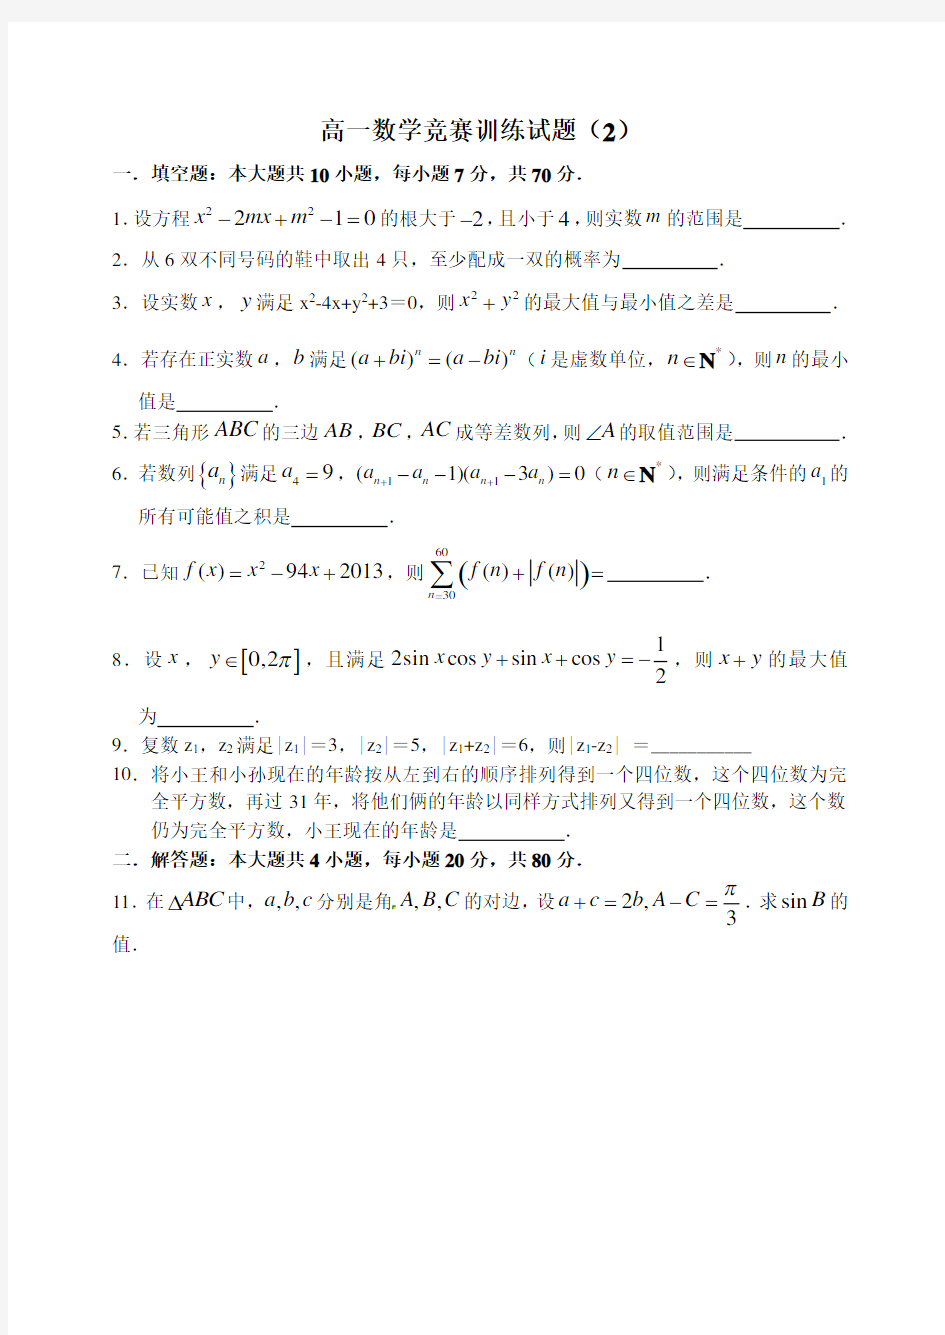 2013年全国高中数学联赛江苏赛区初赛试题解析